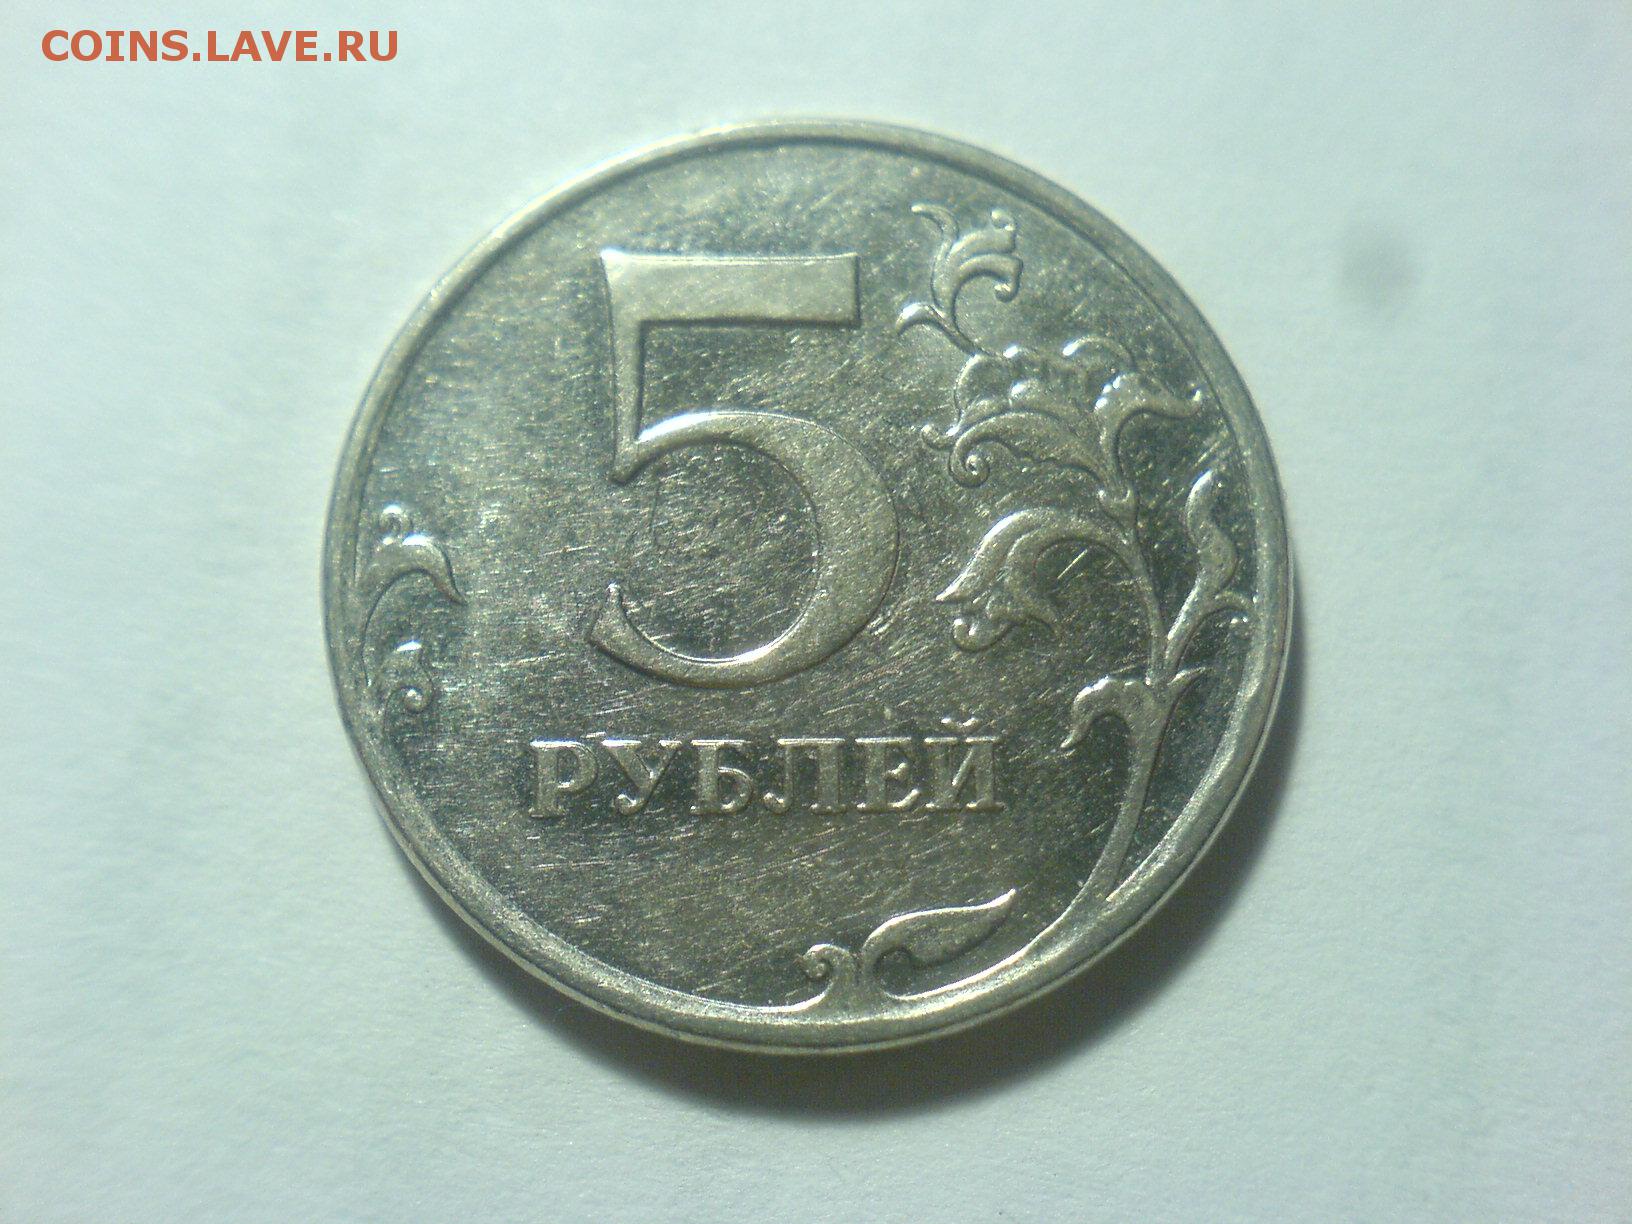 Продаются за 5 рублей. 5 Рублей 2010 ММД. Редкие монеты 5 рублей 1992 ММД. ММД, шт. Б. 5 Рублей 2010 года продать.